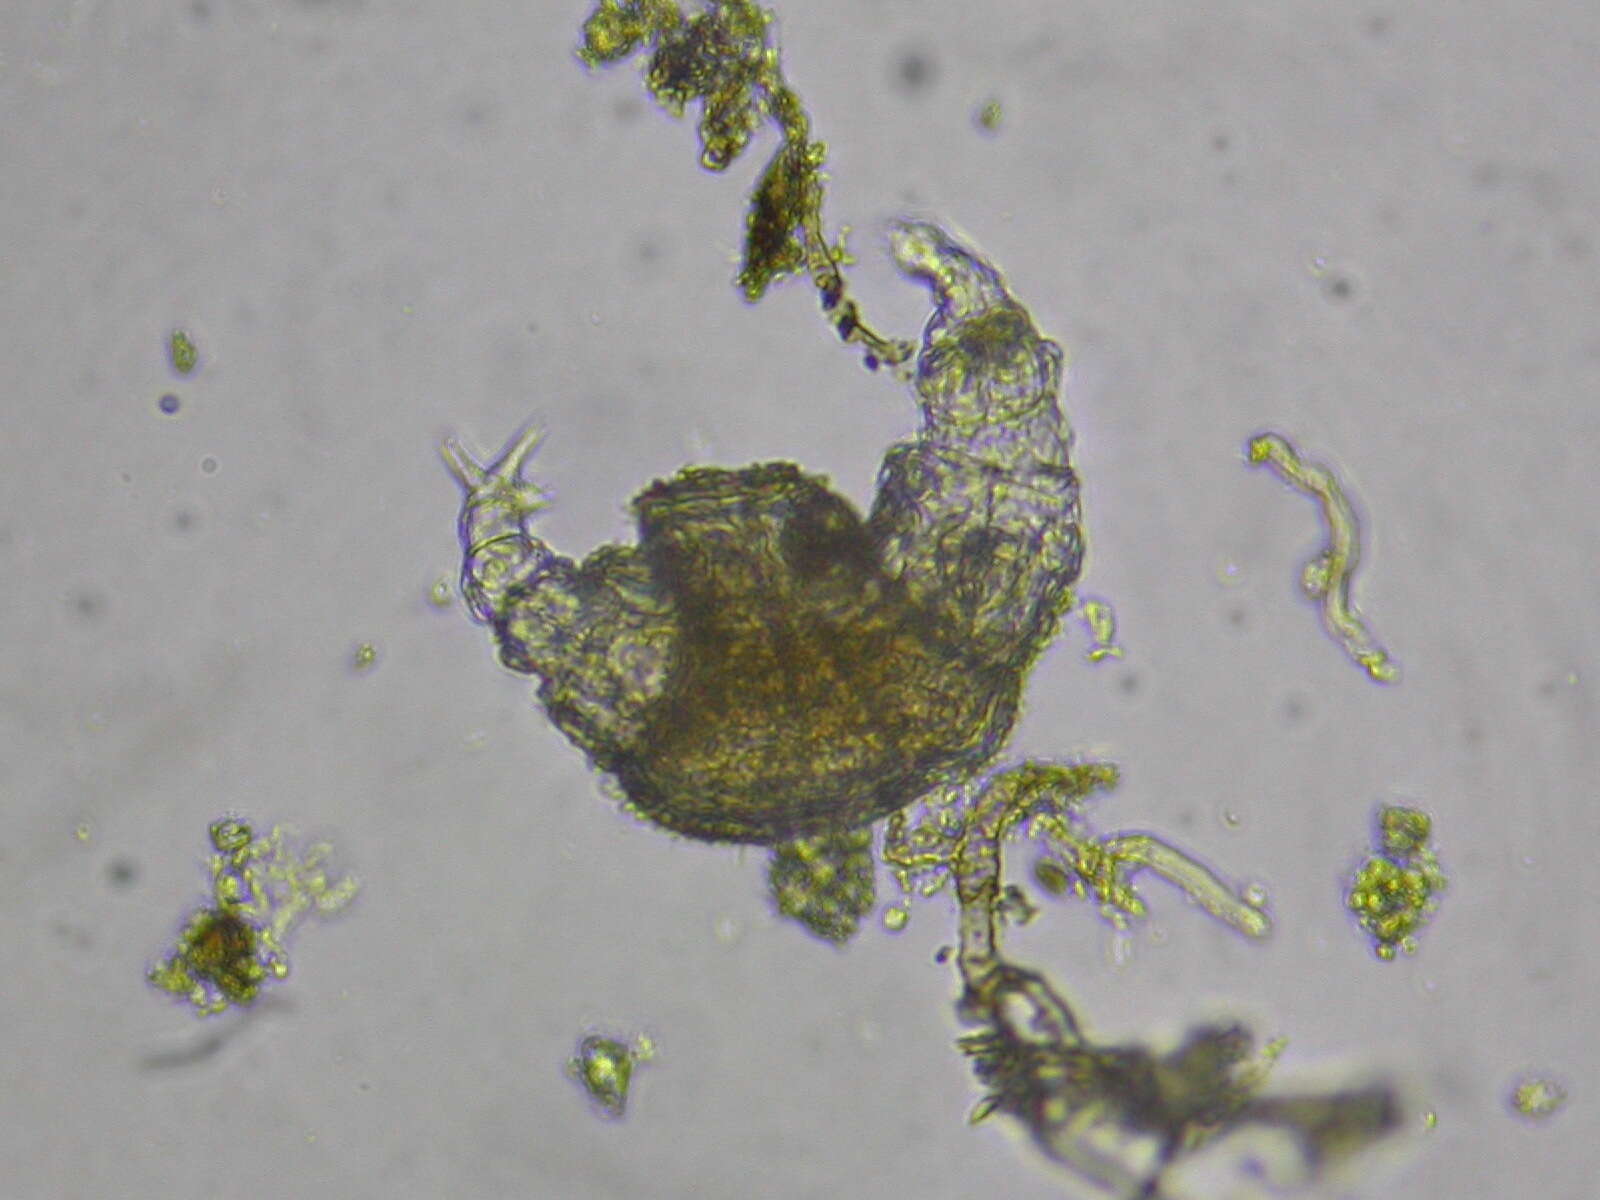 Image of Bdelloidea